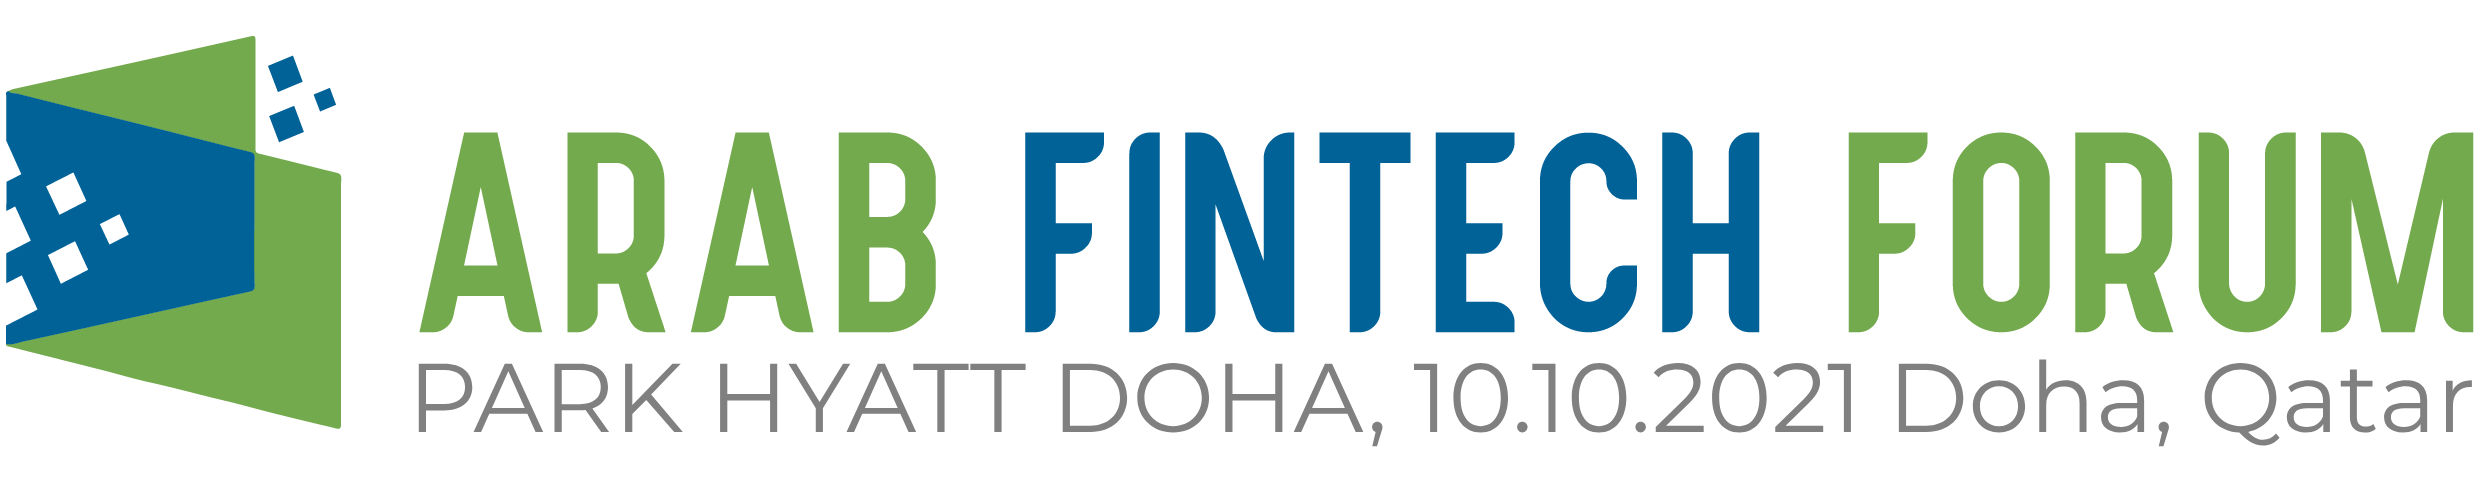 Arab Fintech Forum – Edition 2021 Qatar